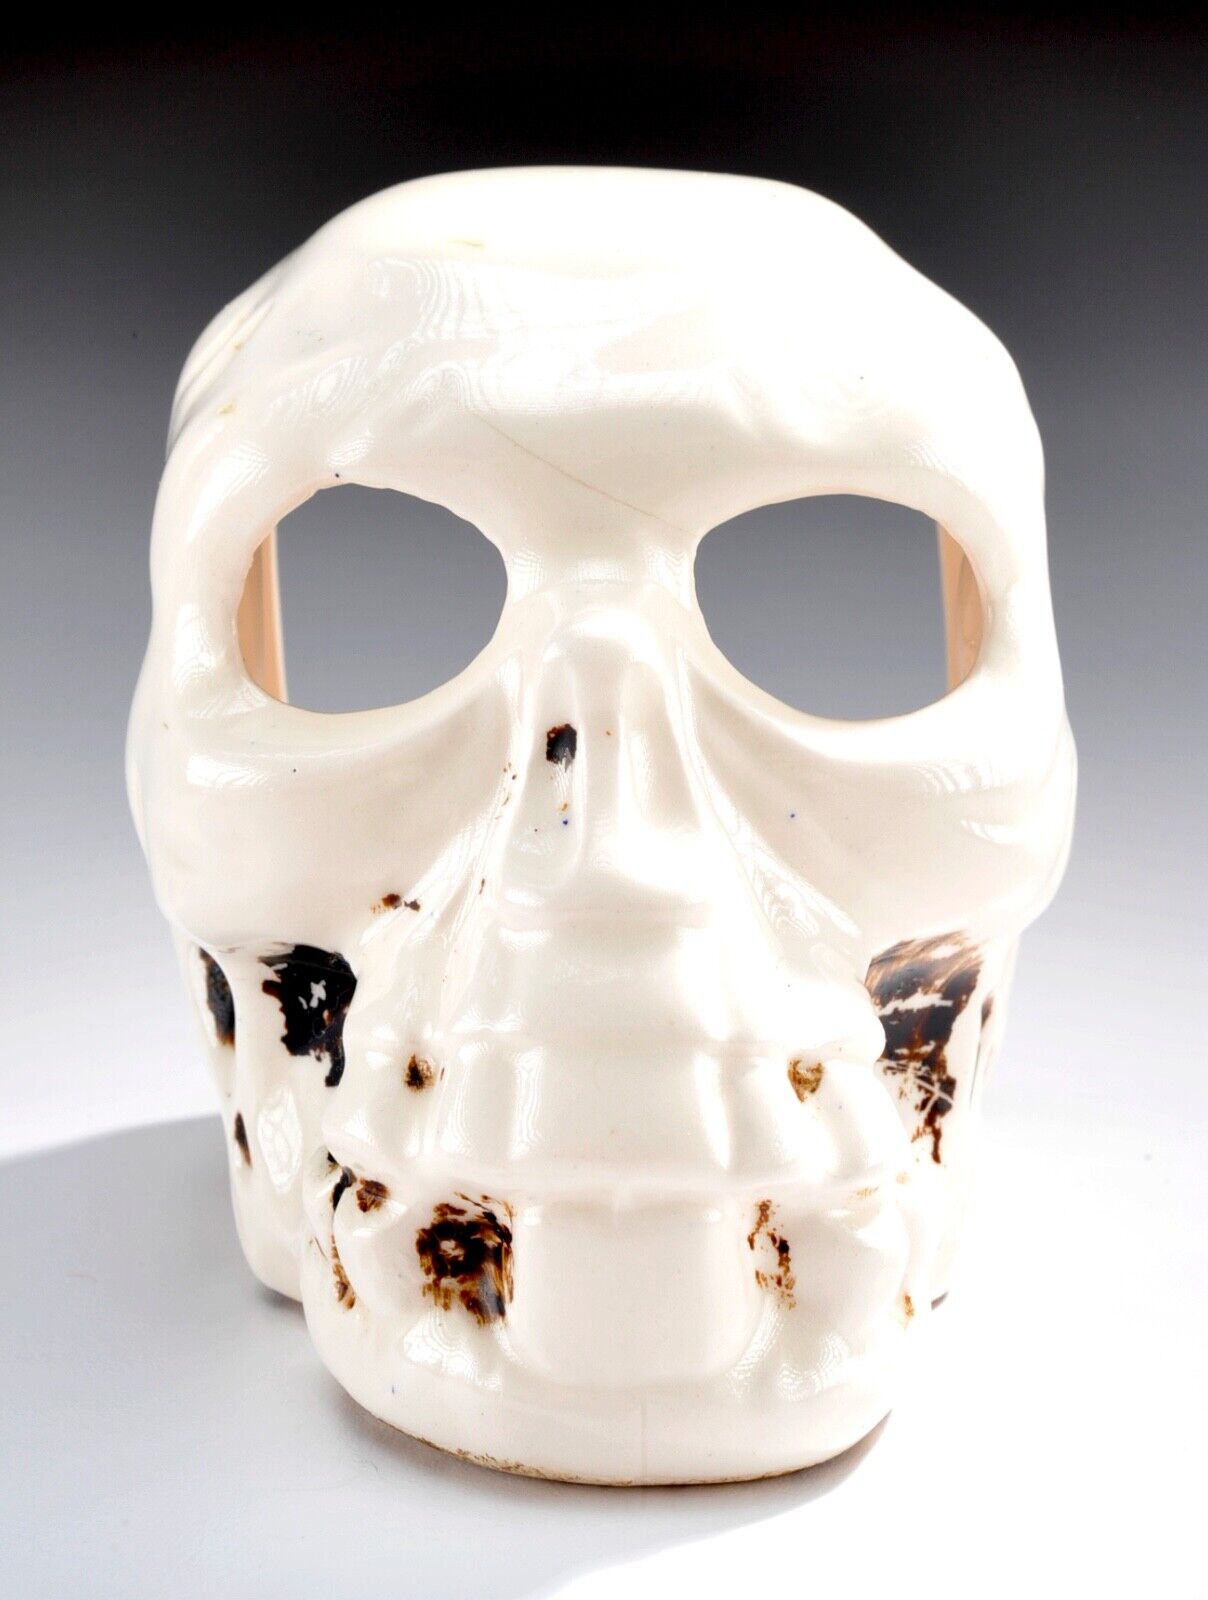 Vintage 1950's Porcelain Human Skull Incense Burner - Made in Japan - MCM